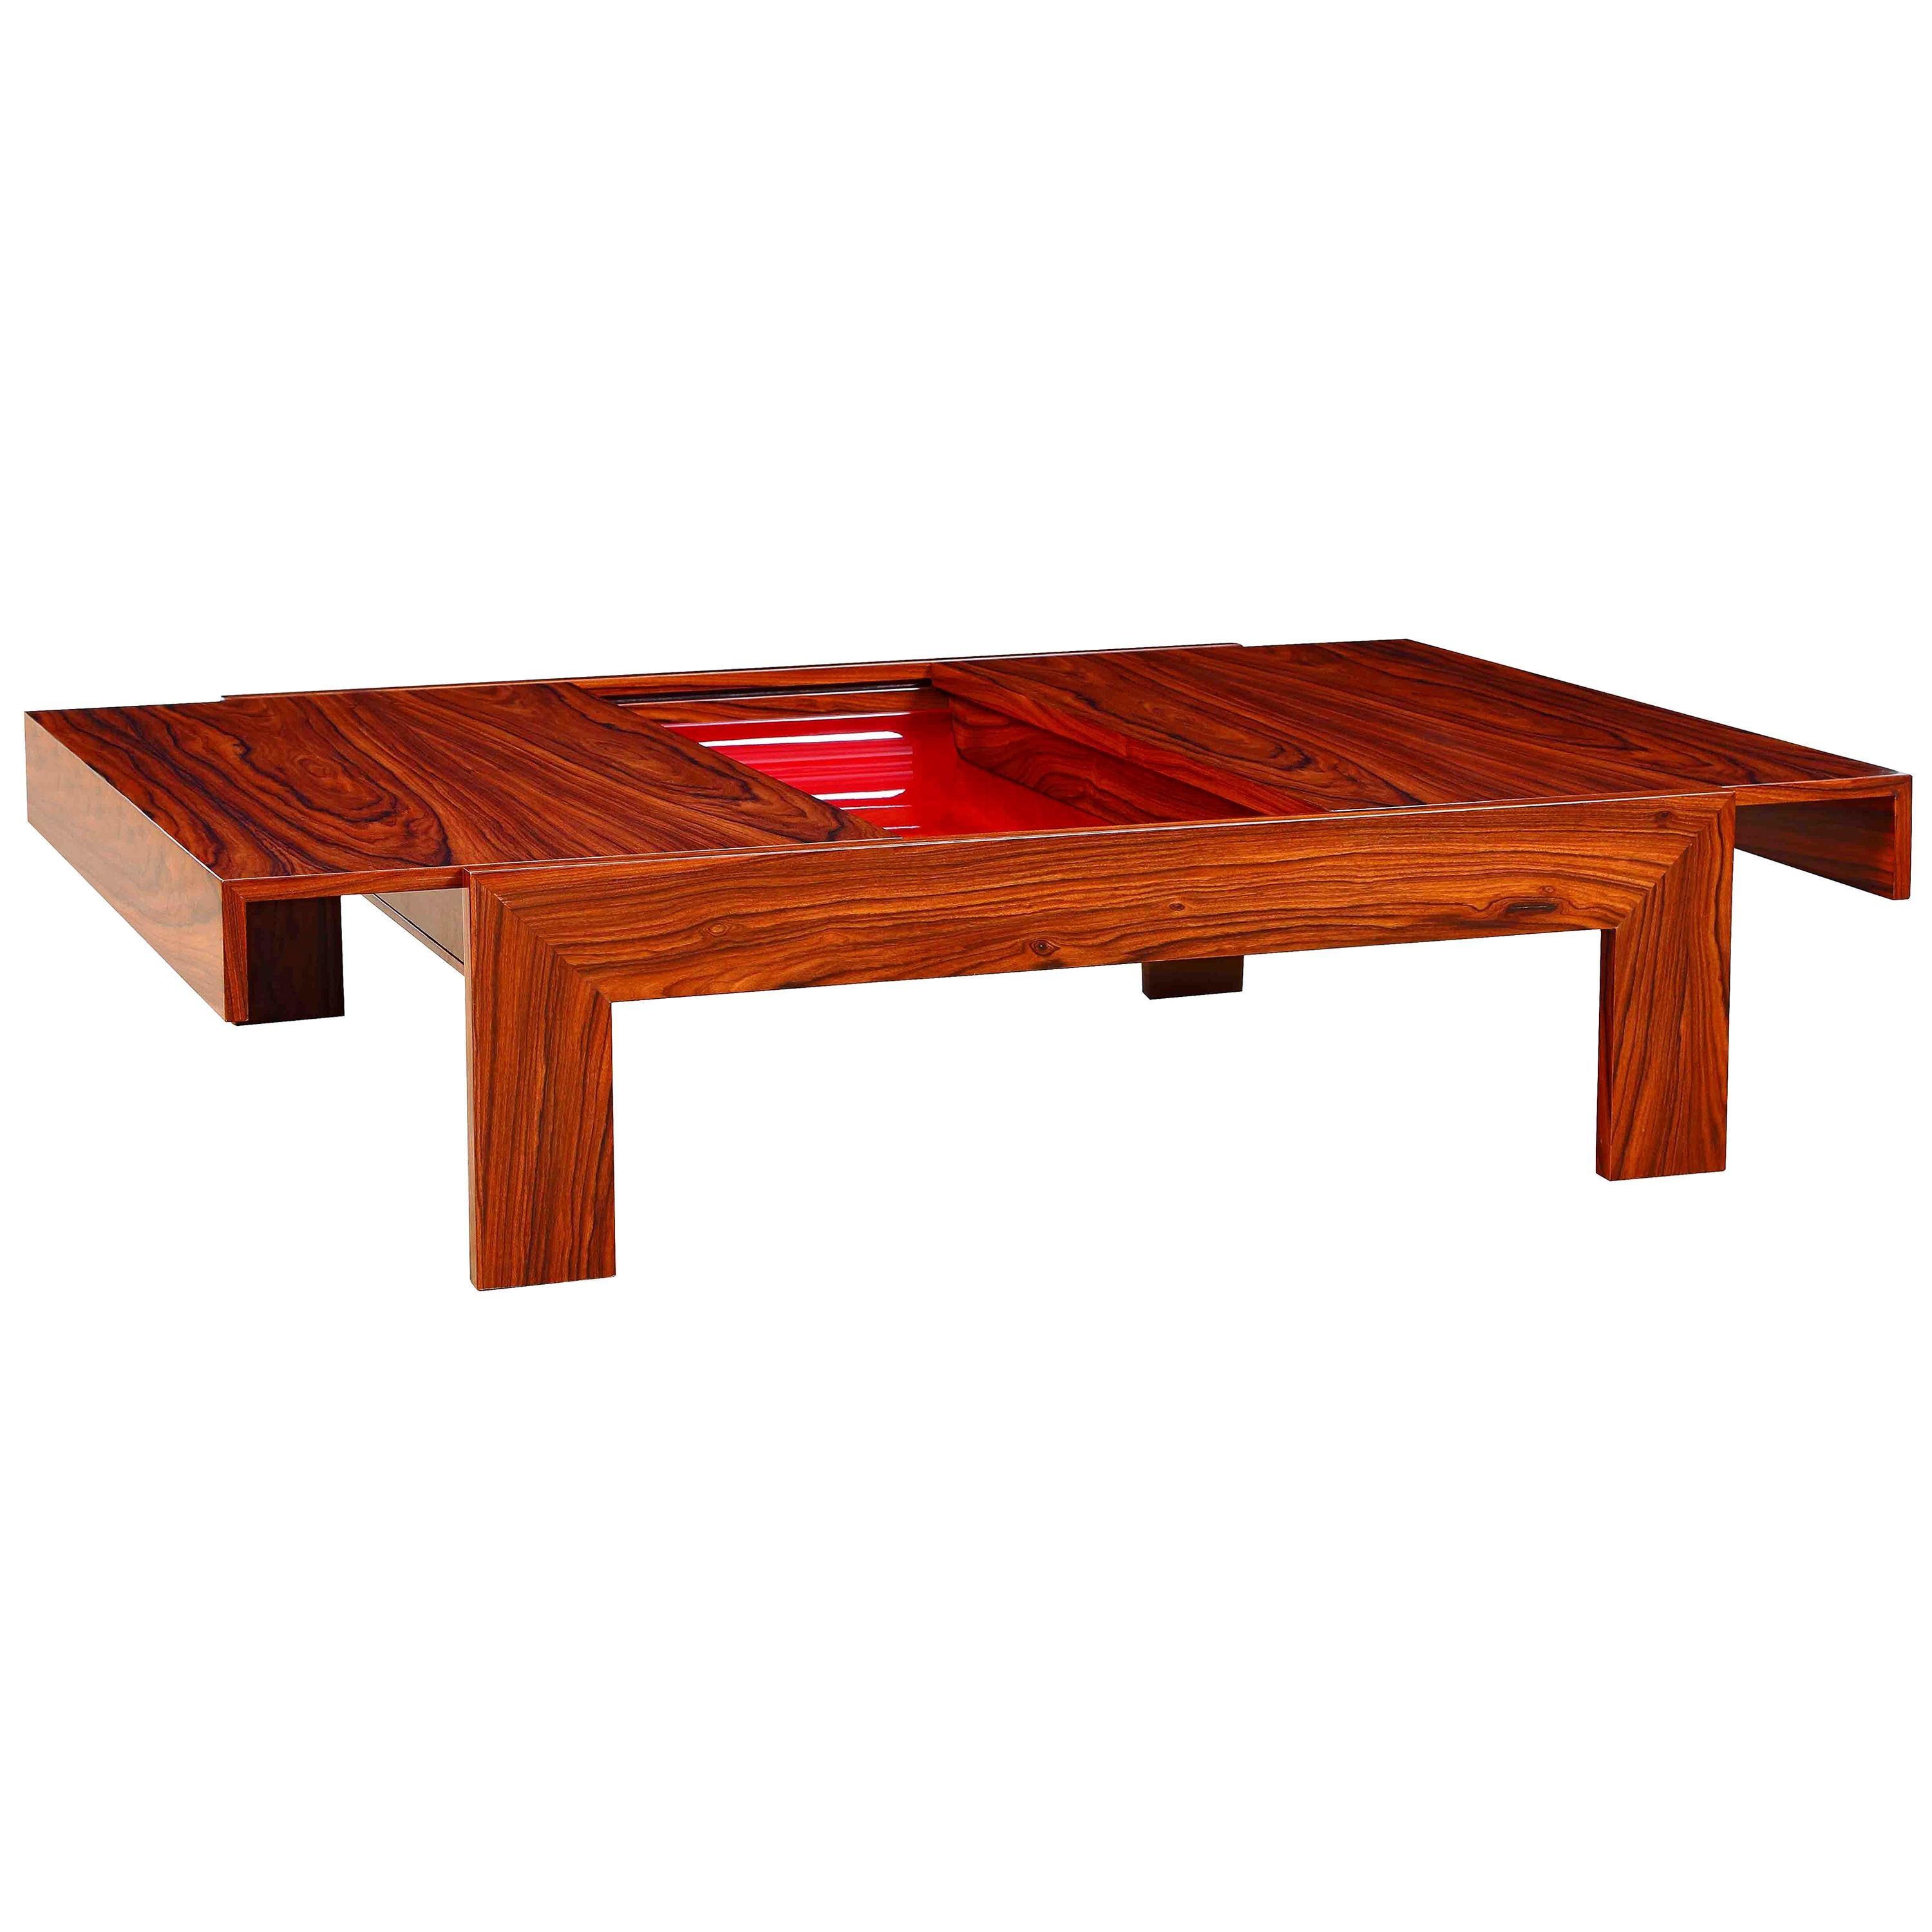 "BORSOI" Contemporary Centre Table in Pau Ferro Wood by Janete Costa For Sale